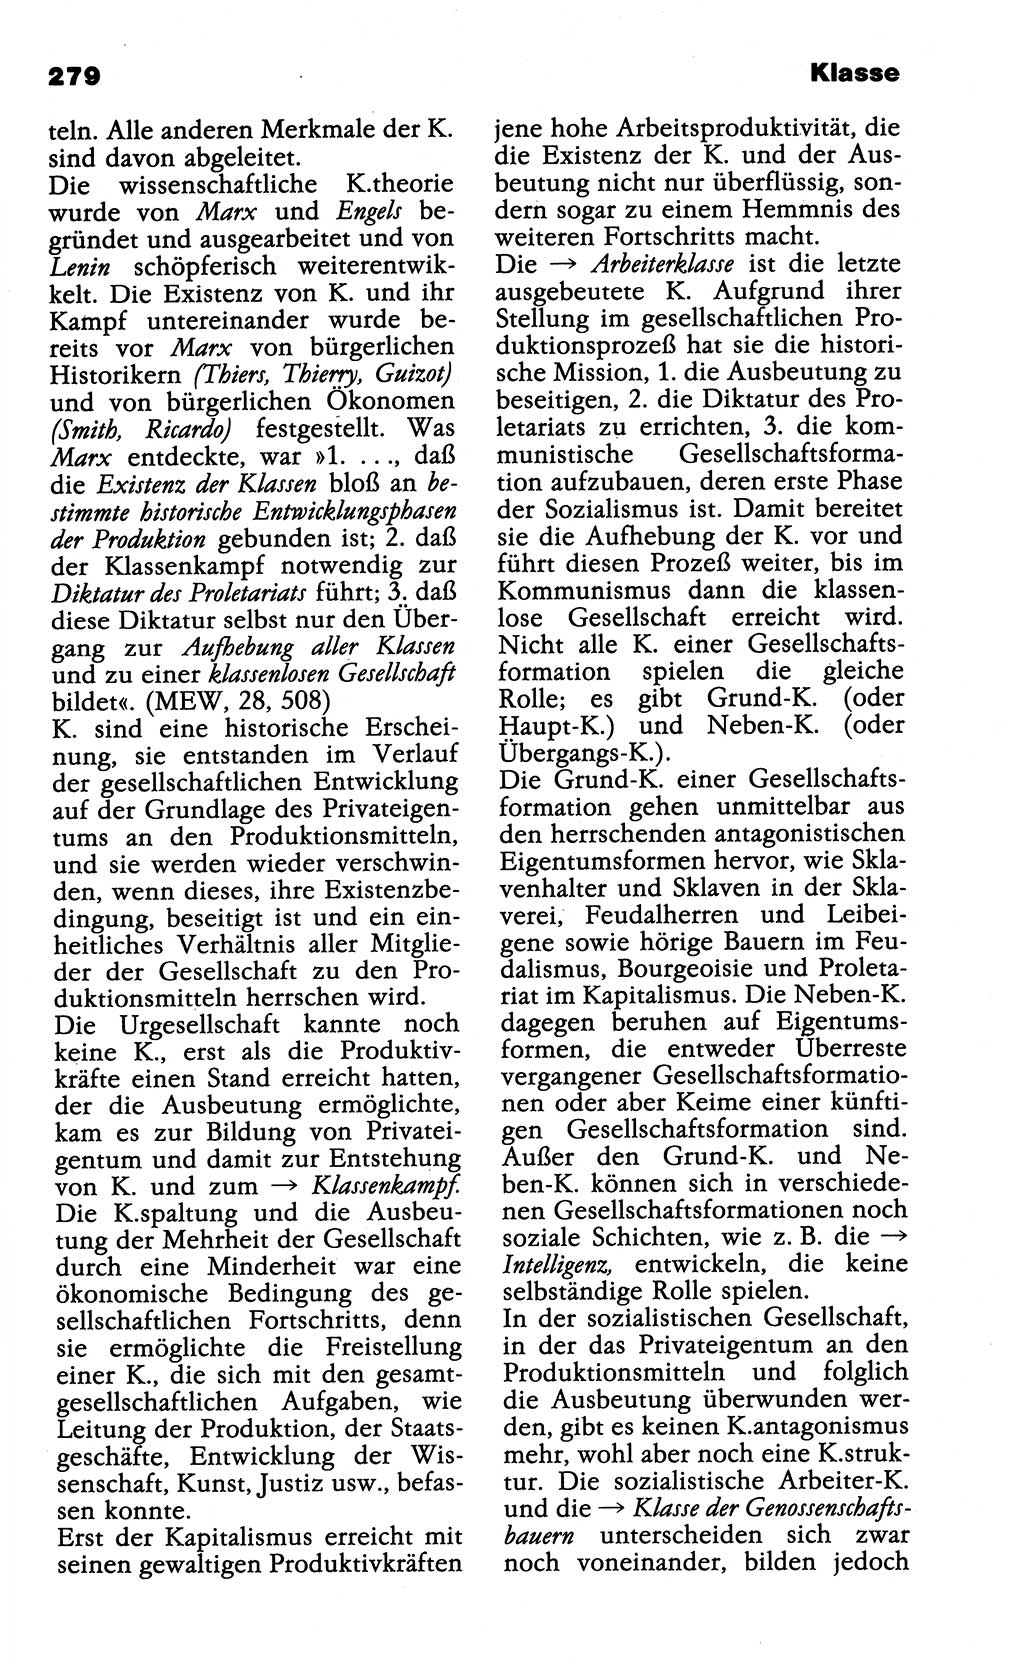 Wörterbuch der marxistisch-leninistischen Philosophie [Deutsche Demokratische Republik (DDR)] 1985, Seite 279 (Wb. ML Phil. DDR 1985, S. 279)